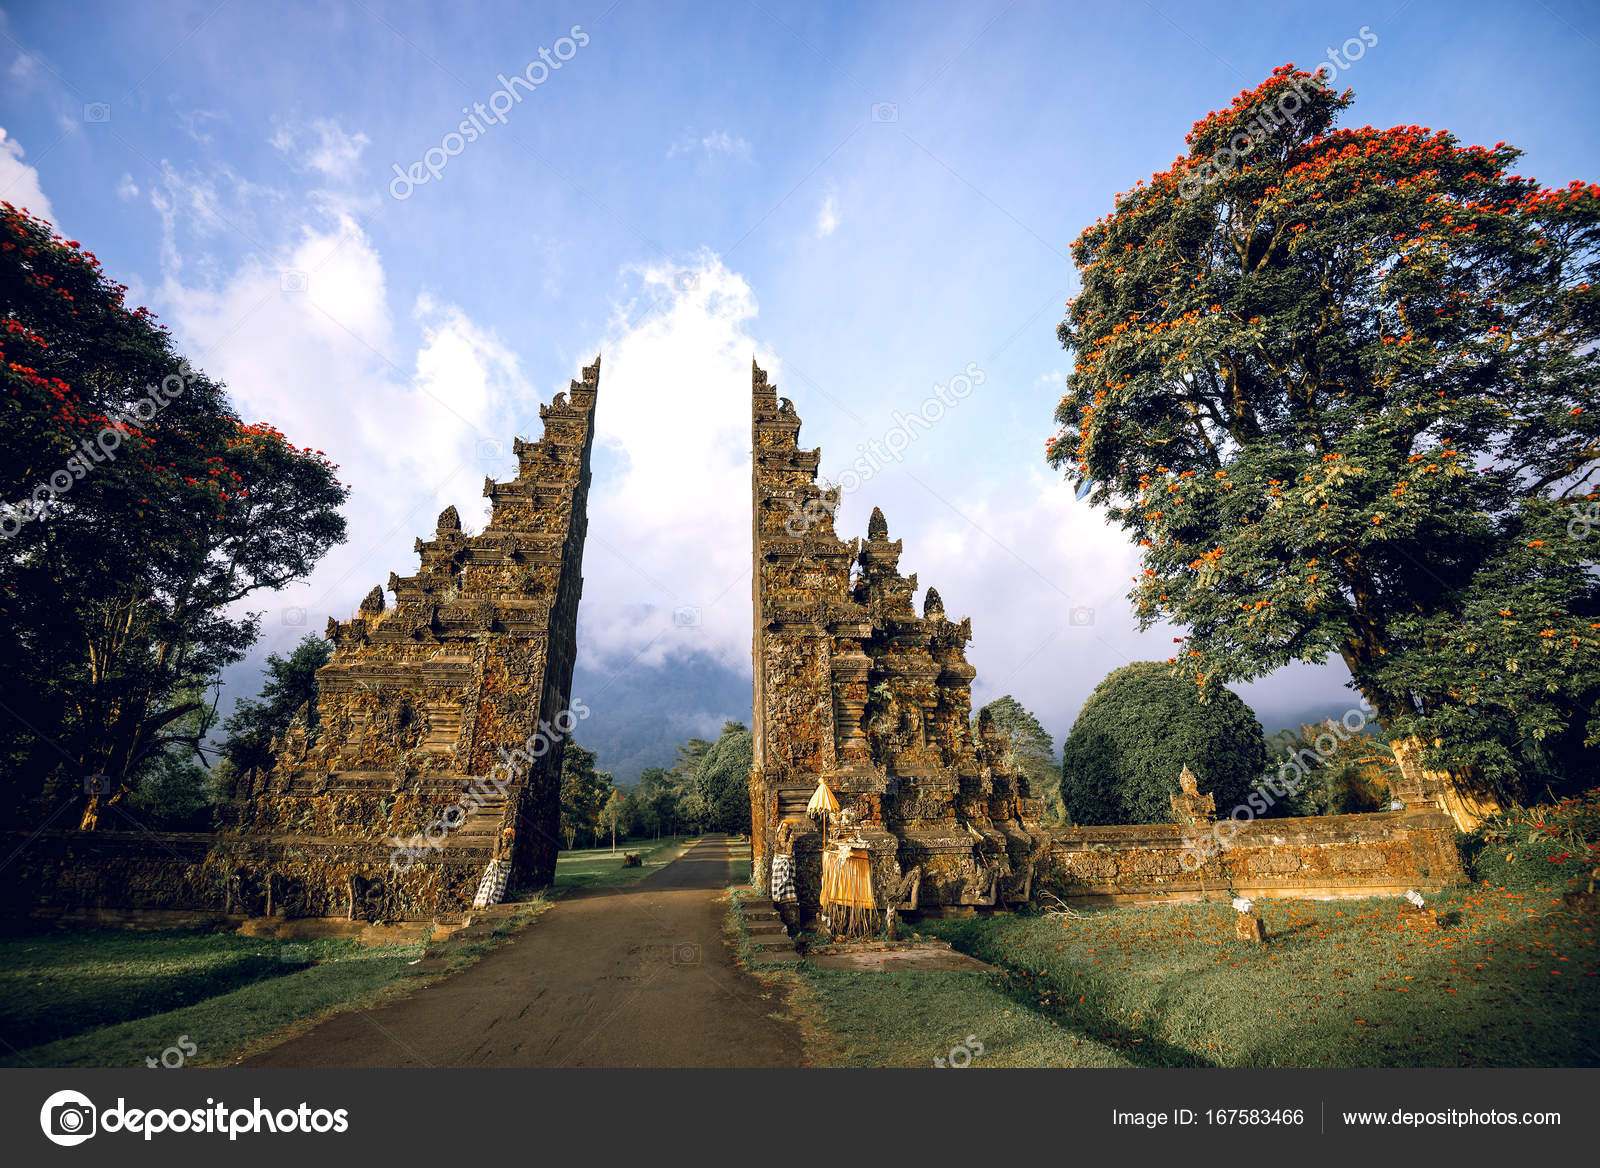  Porte  hindoue de Bali   Photographie ozimicians  167583466